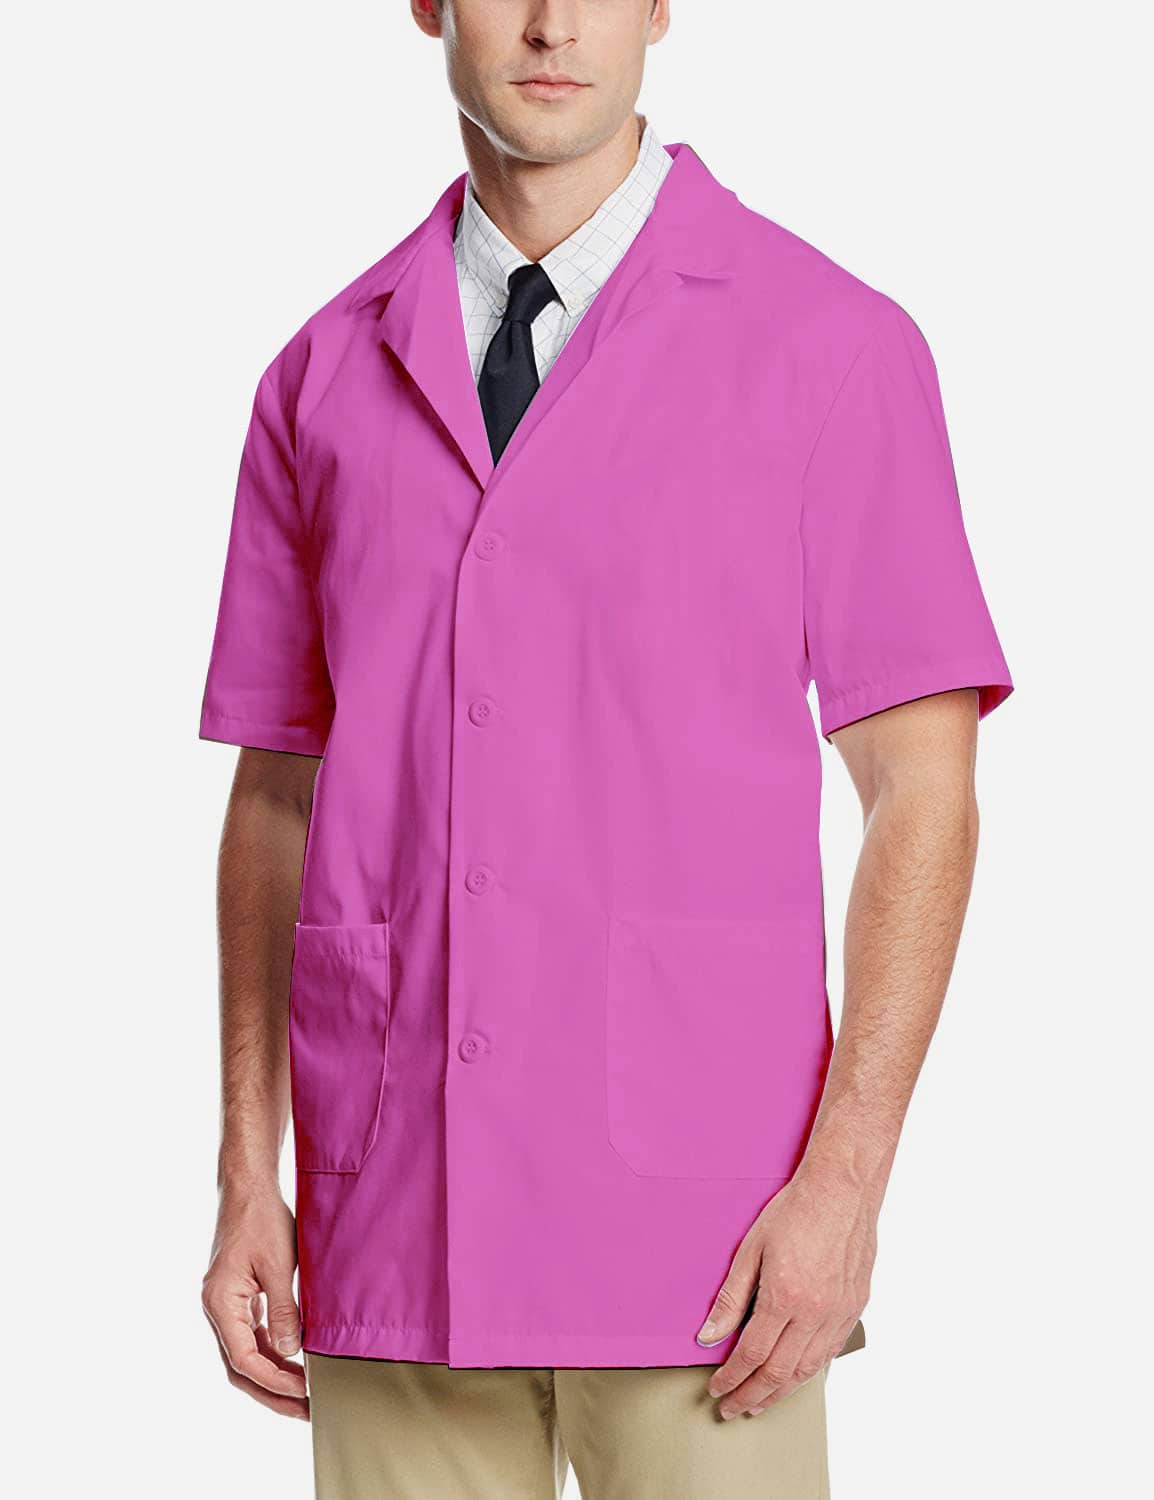 pink lab coat